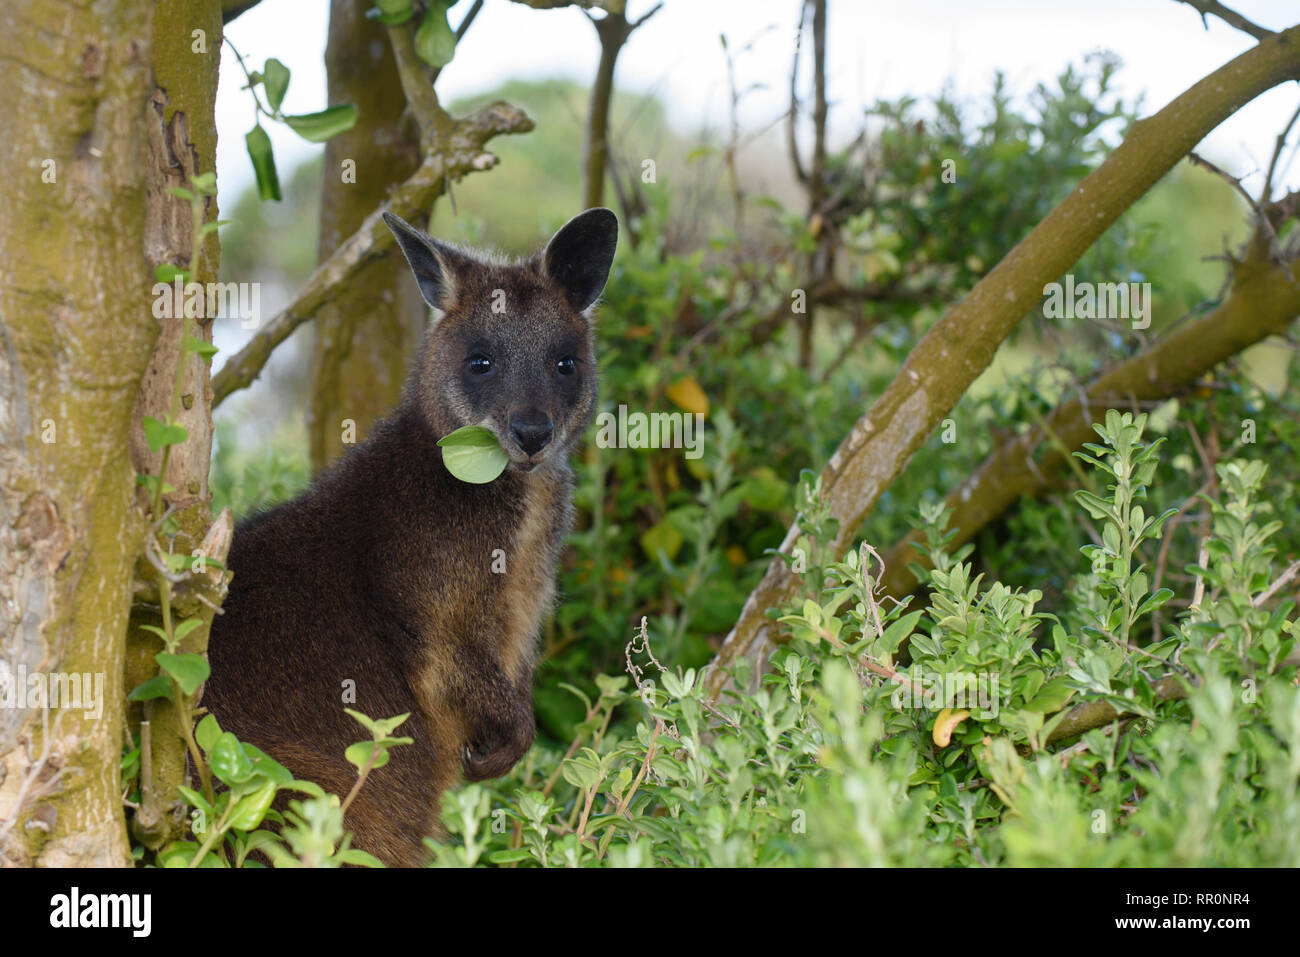 Wallaby, Wallabia bicolor, se nourrir de la végétation dans la zone côtière Port Fairy, Victoria Australie Banque D'Images